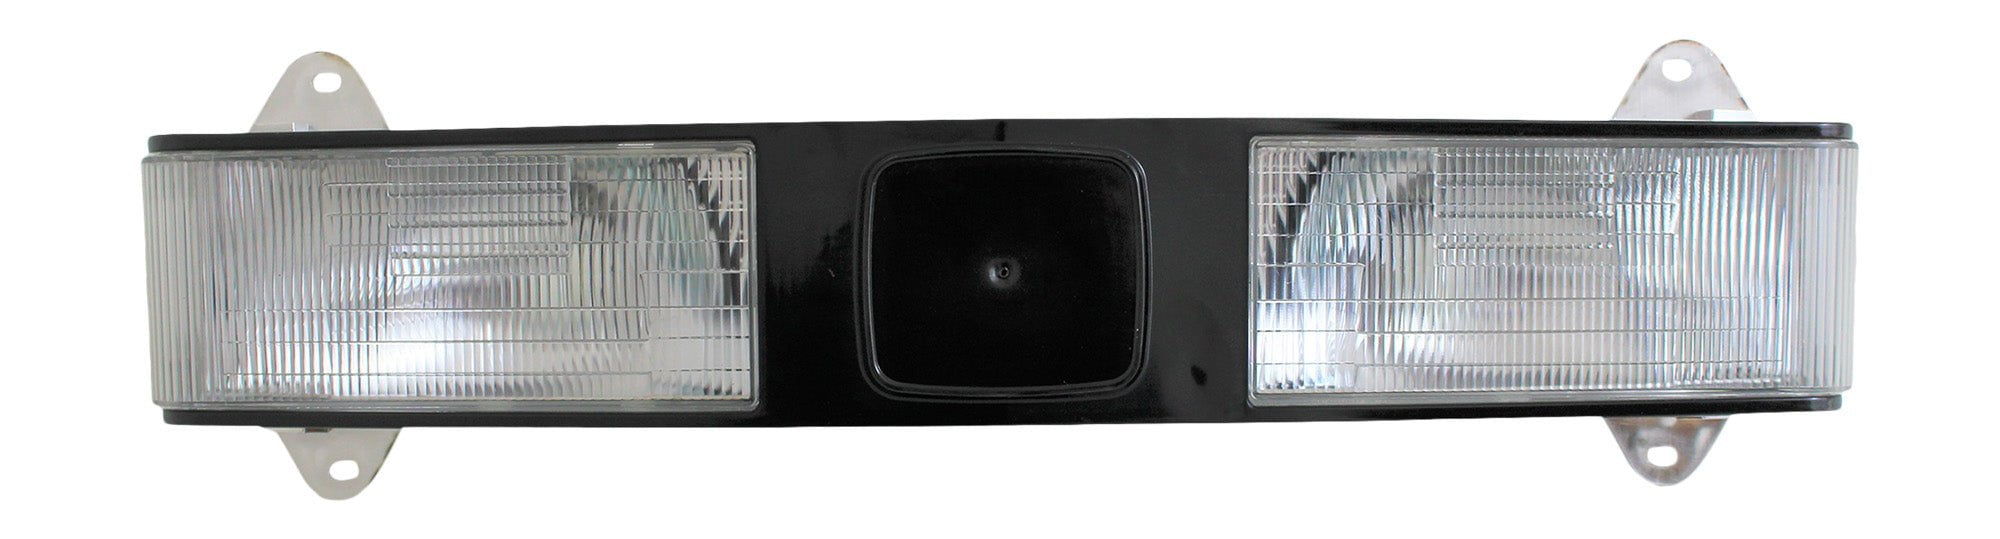 Headlight Compatible With John Deere LVA802641 670 770 790 870 970 990 1070